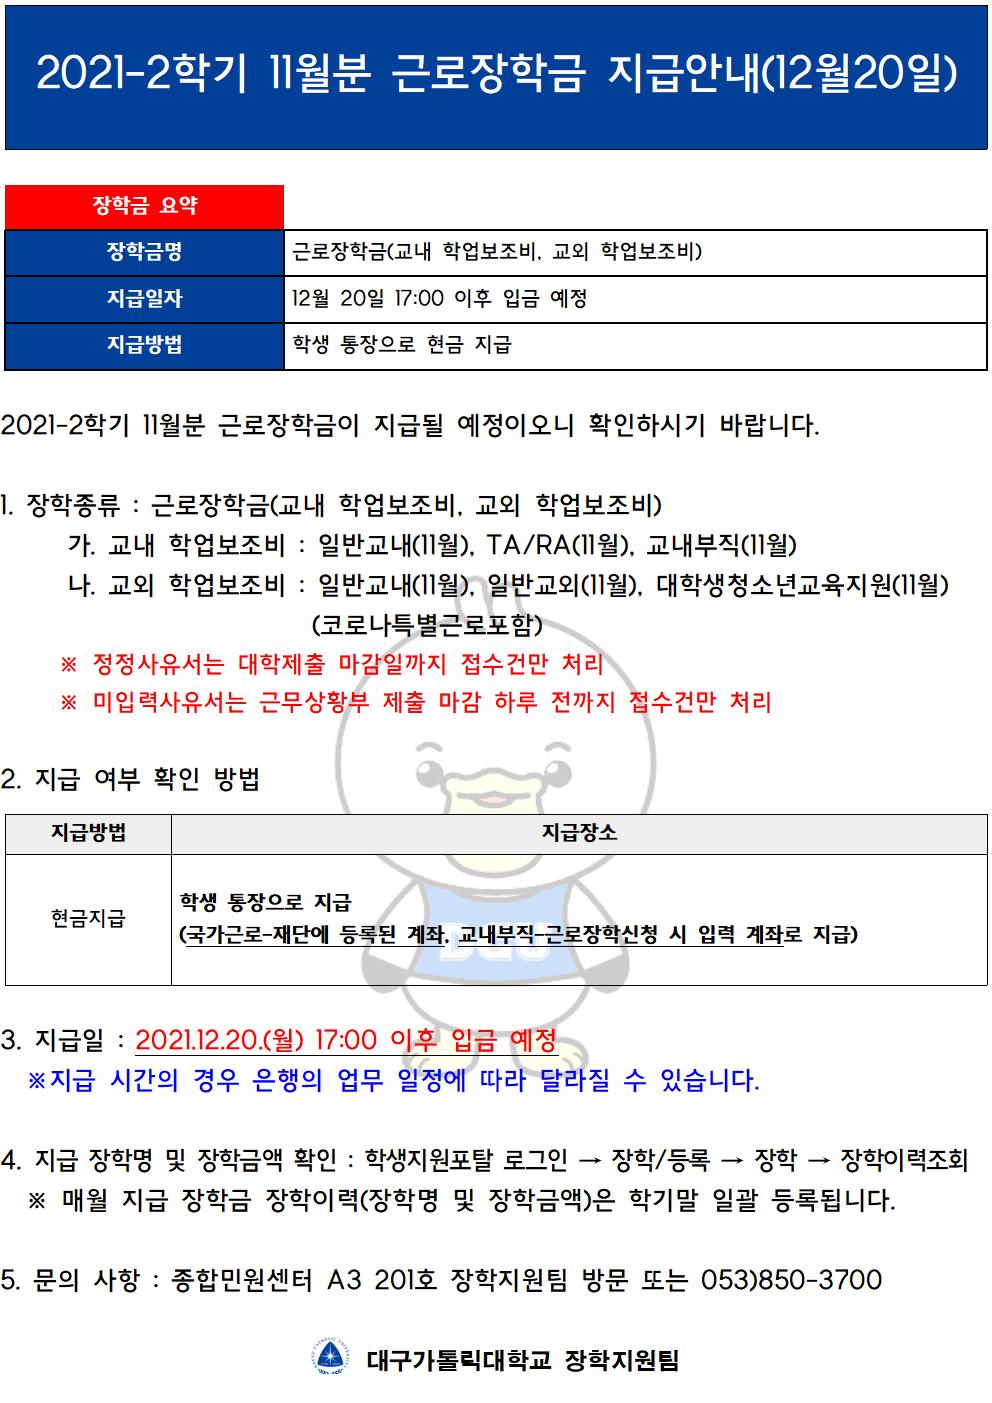 [근로] 2021-2학기 11월분 근로장학금 지급안내(12월 20일)